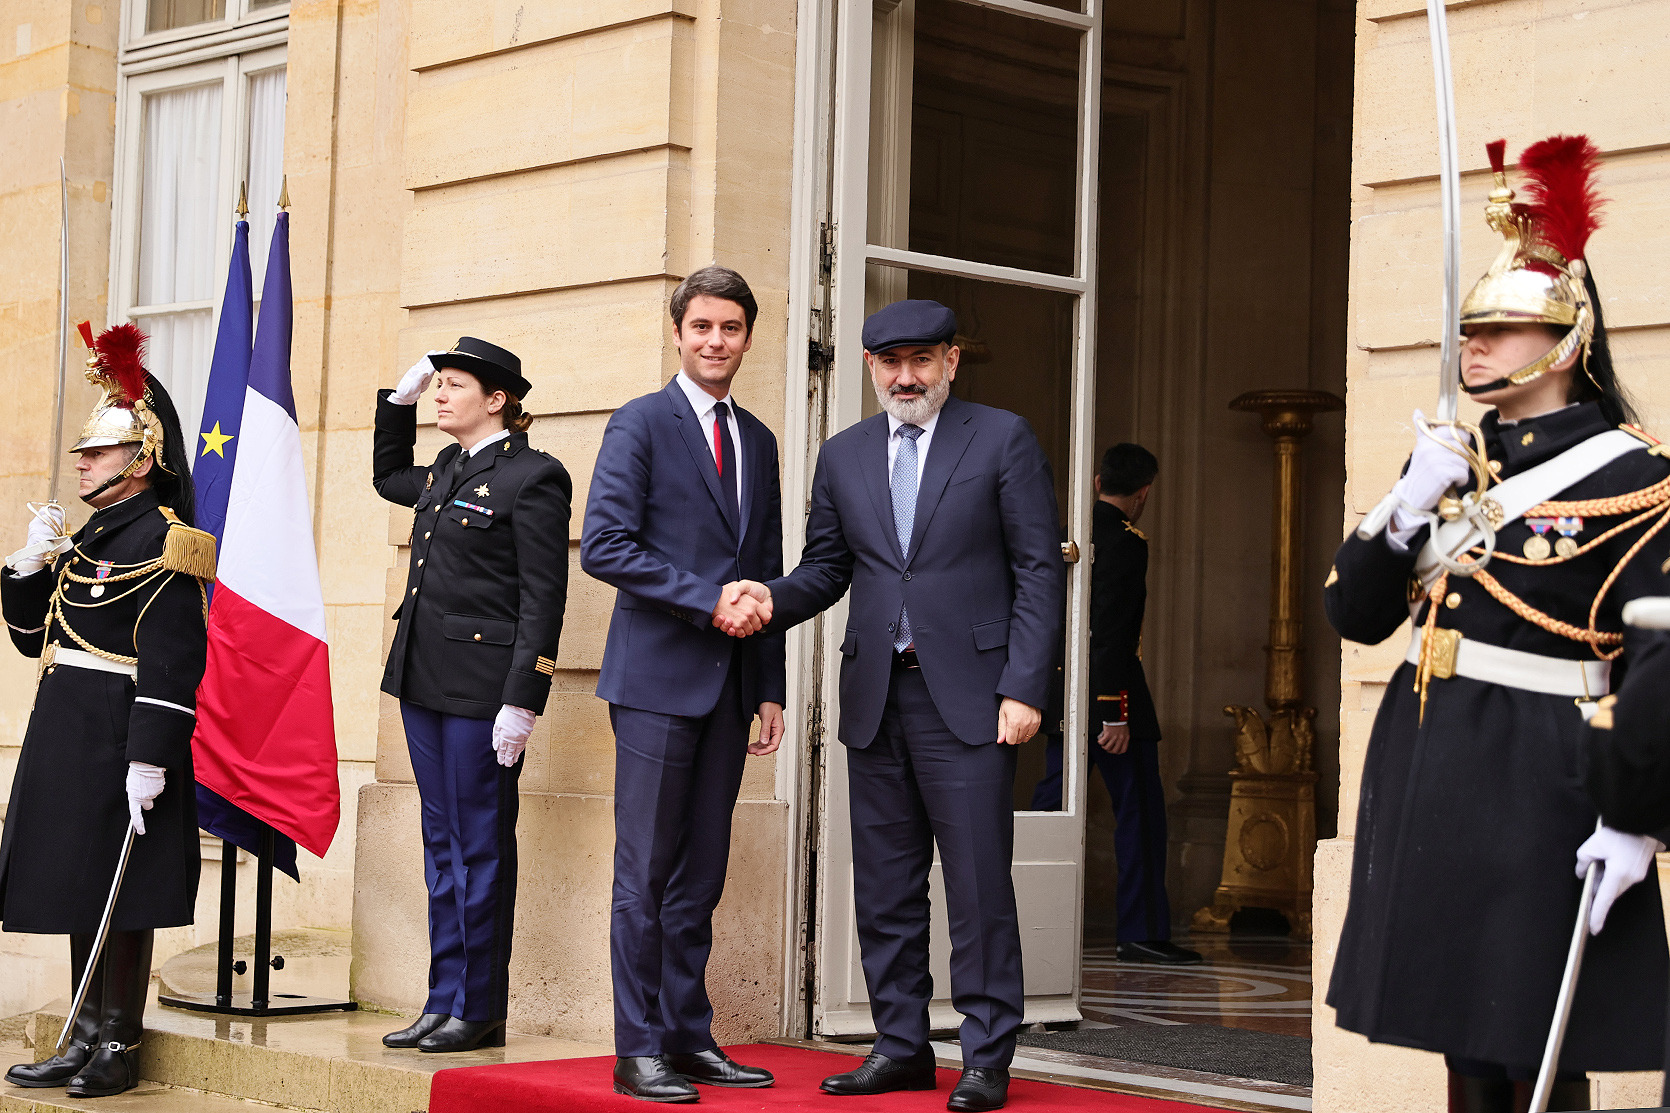 Նիկոլ Փաշինյանը Գաբրիել Ատալին պաշտոնական այցով հրավիրել է Հայաստան. Ֆրանսիայի վարչապետը հրավերն ընդունել է